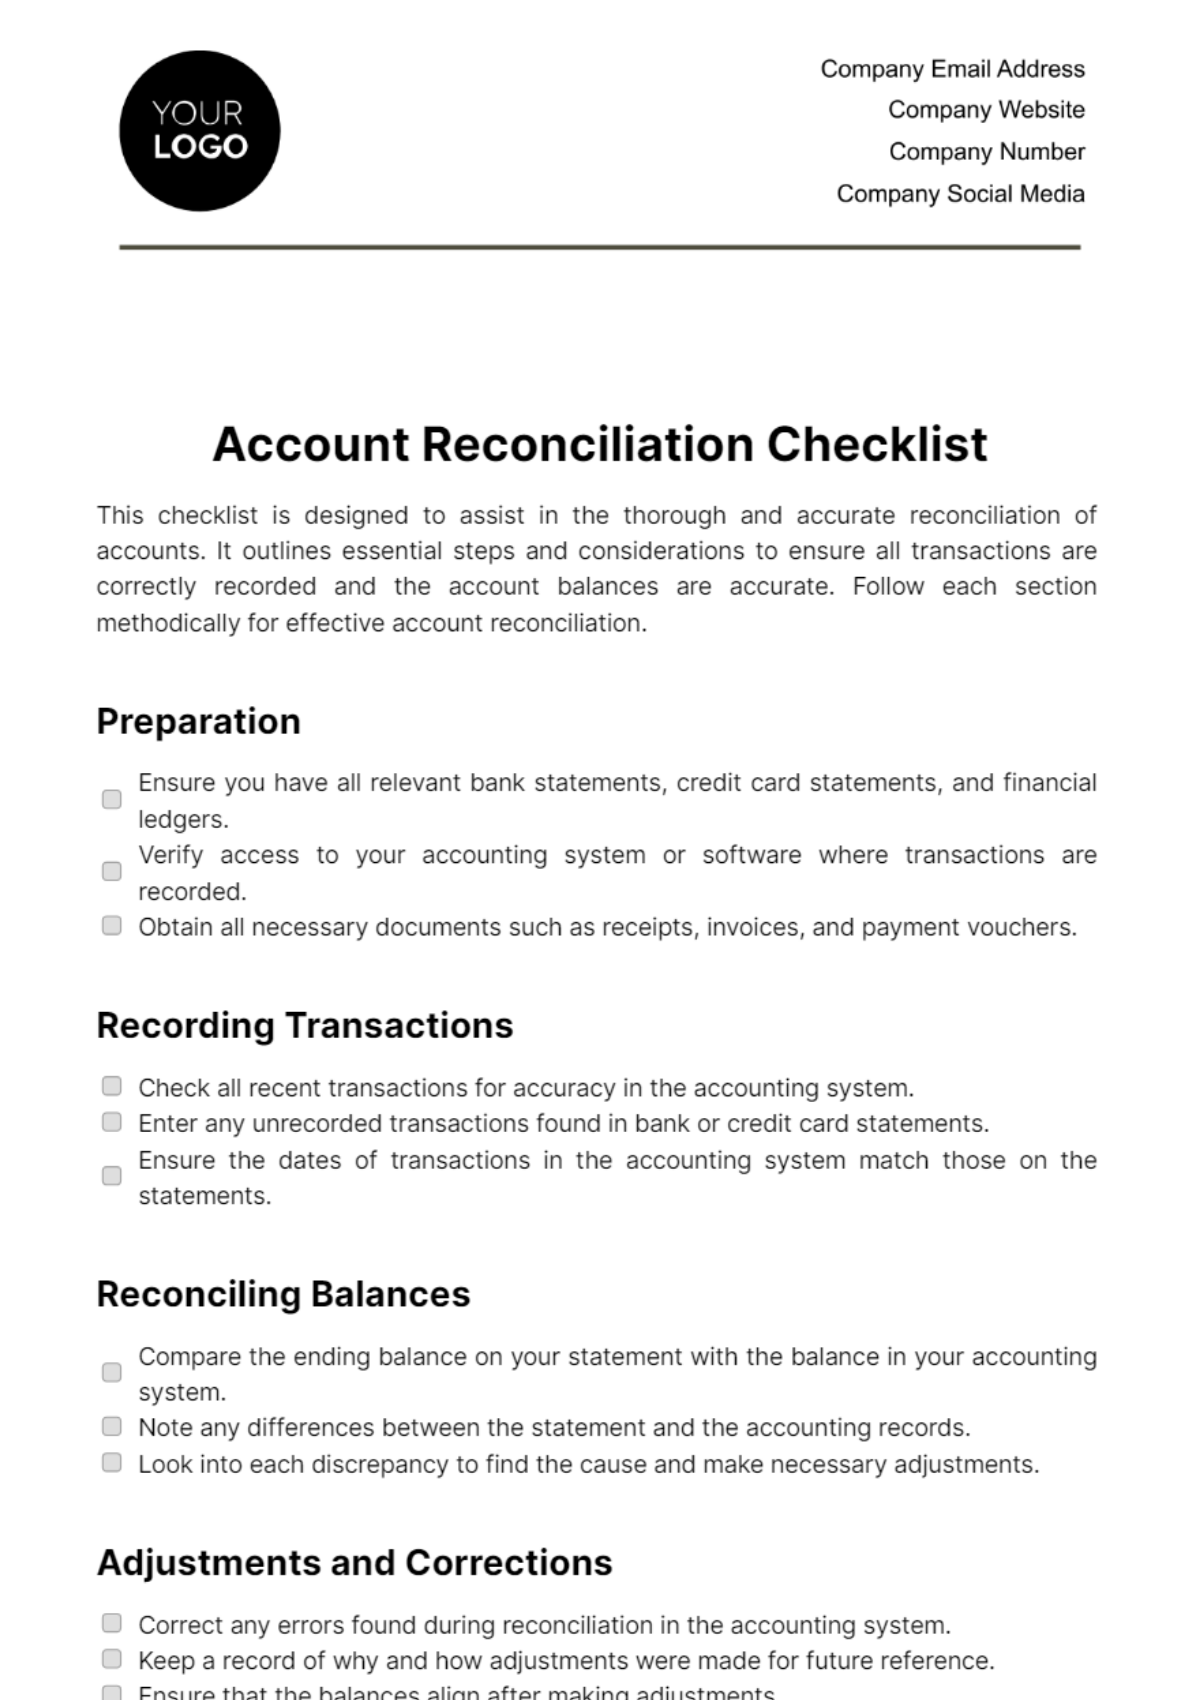 Account Reconciliation Checklist Template